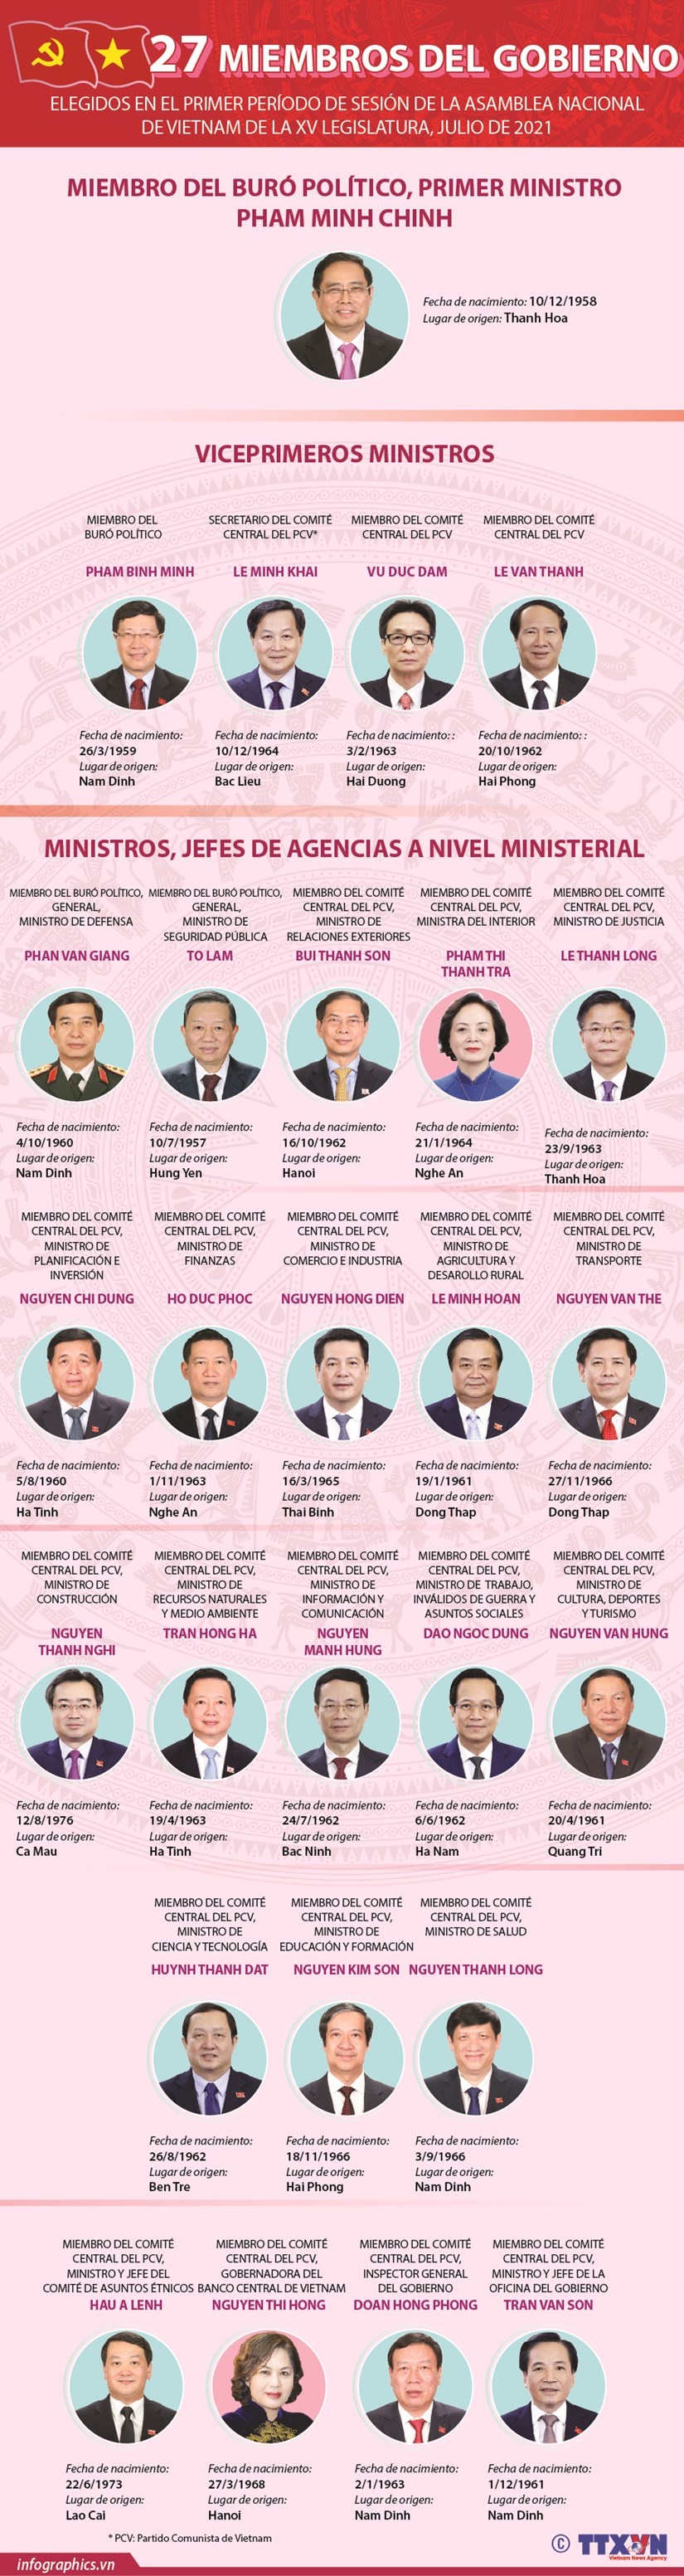 Lista de 27 miembros del Gobierno de Vietnam hinh anh 1